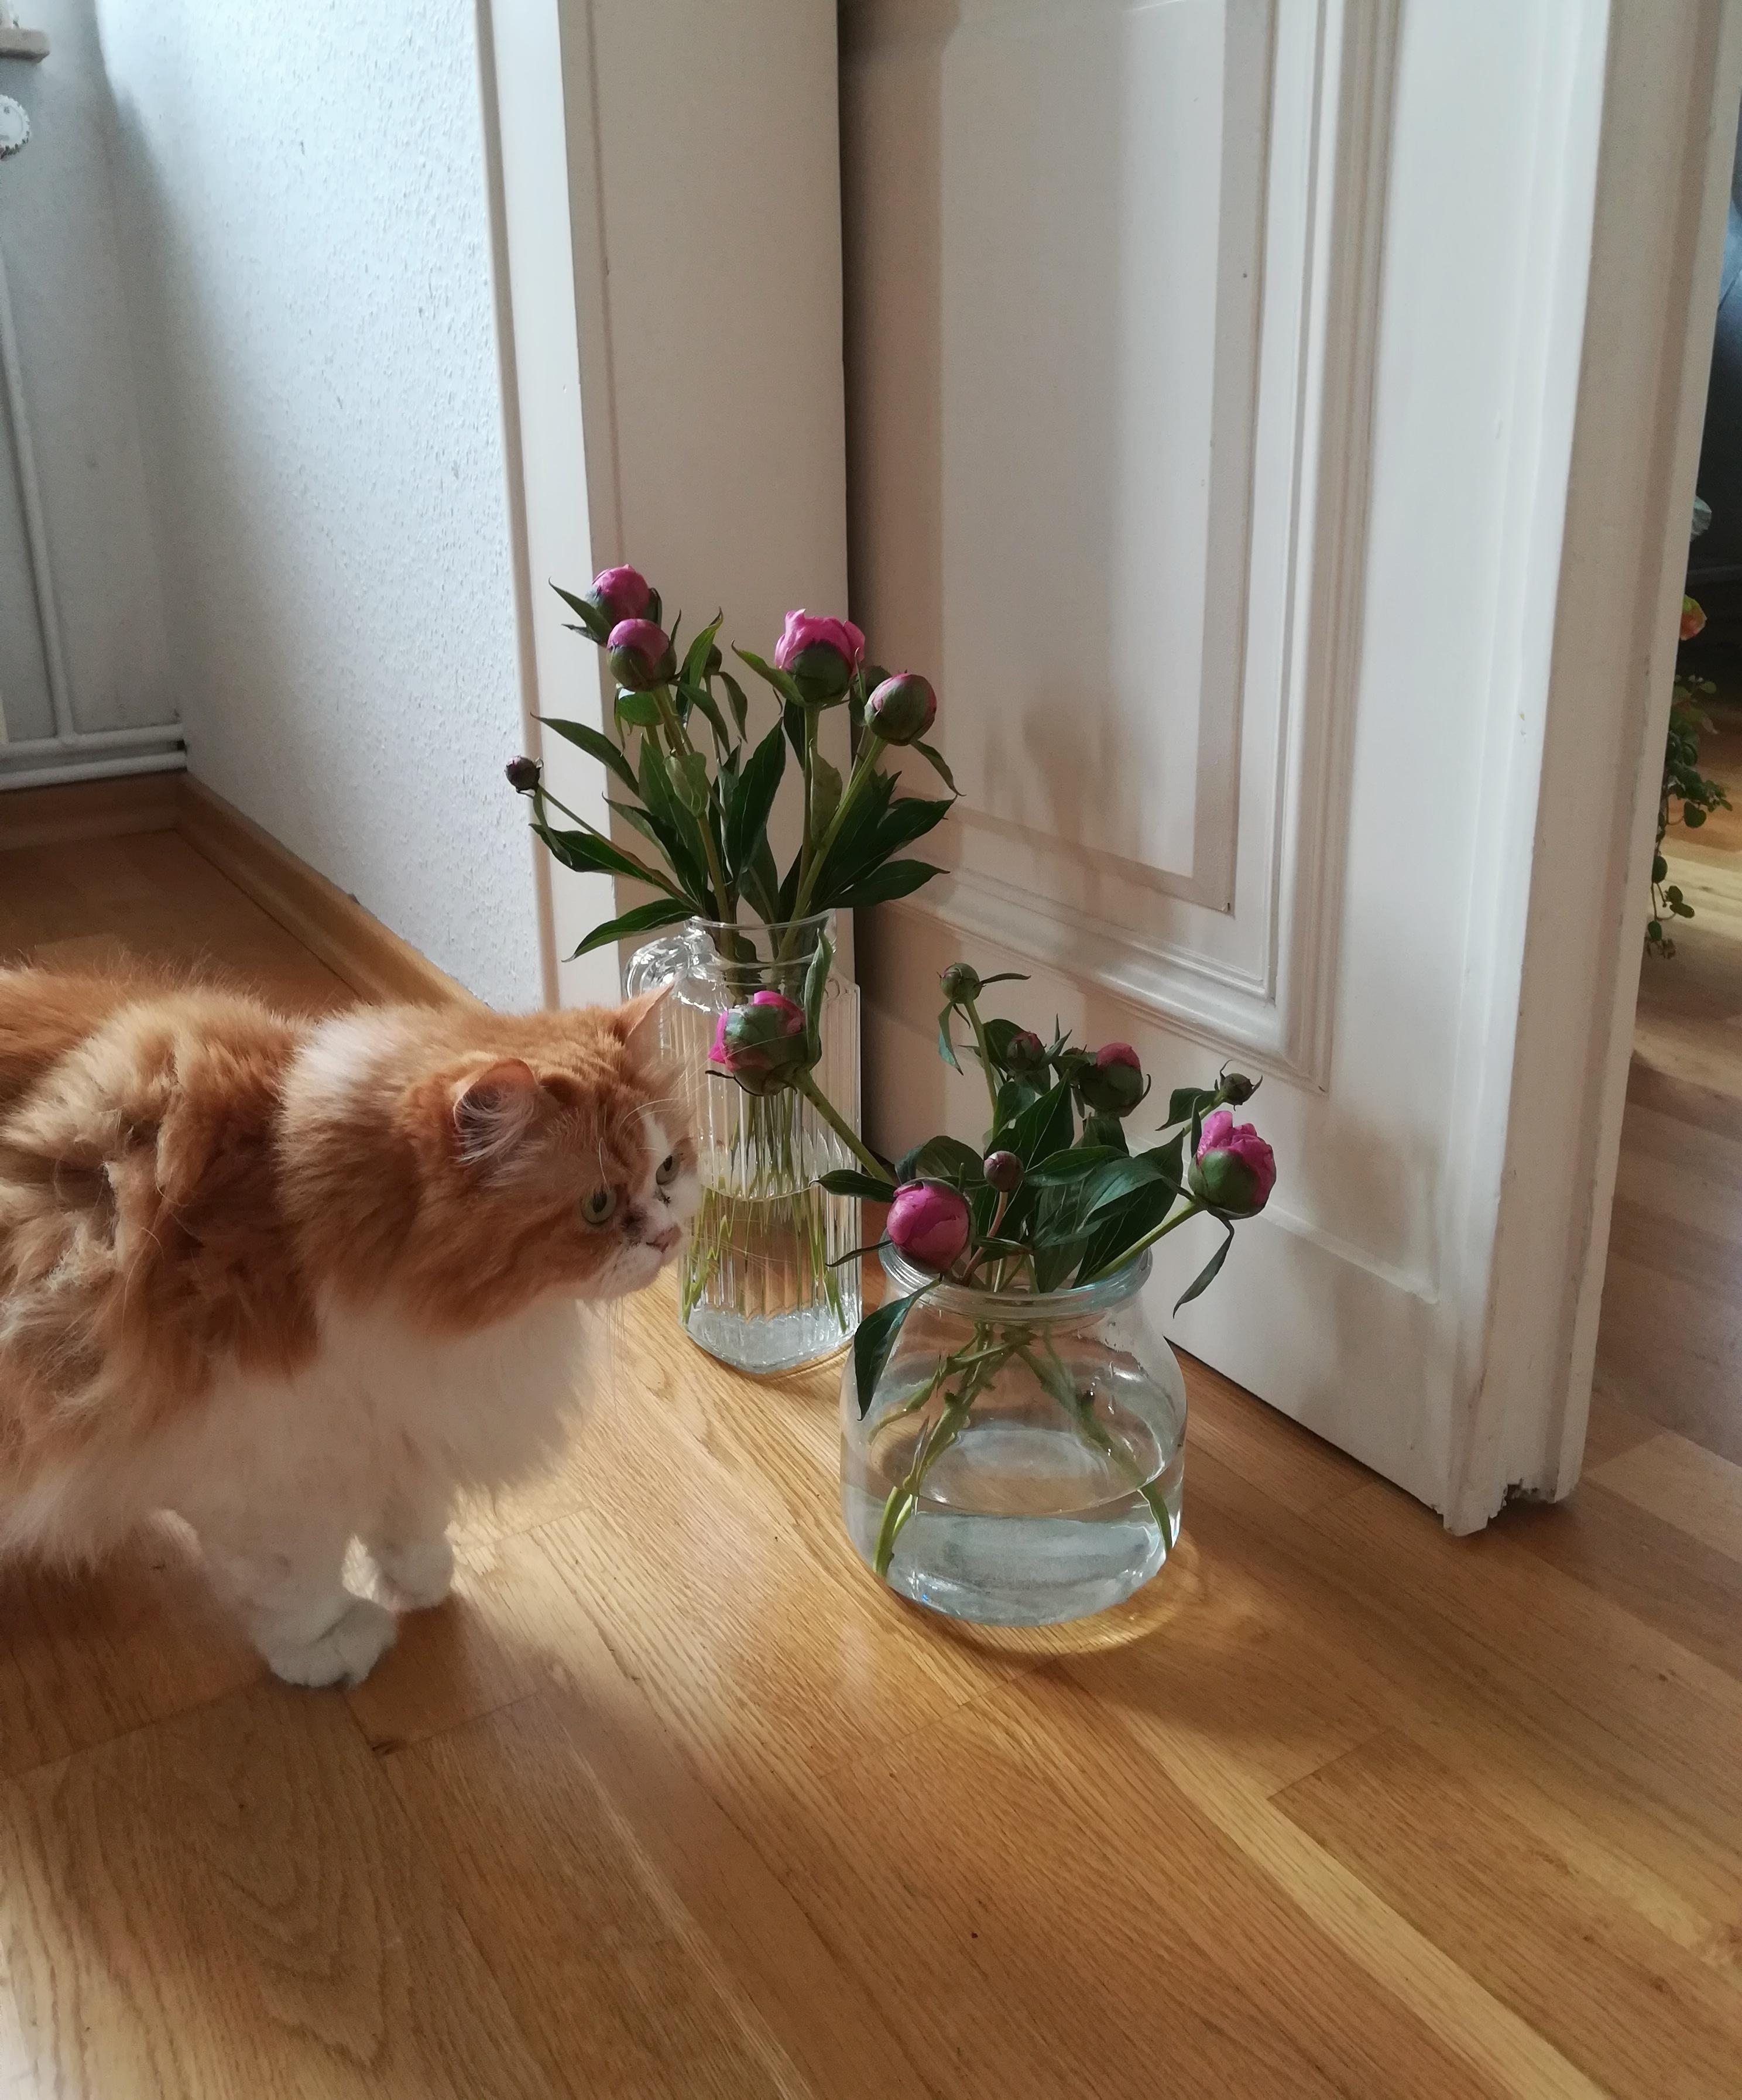 Zwar keine #hortensien aber trotzdem schön :) #pfingstrosen #cat #katze #blumen #flowers #hortensienwoche 